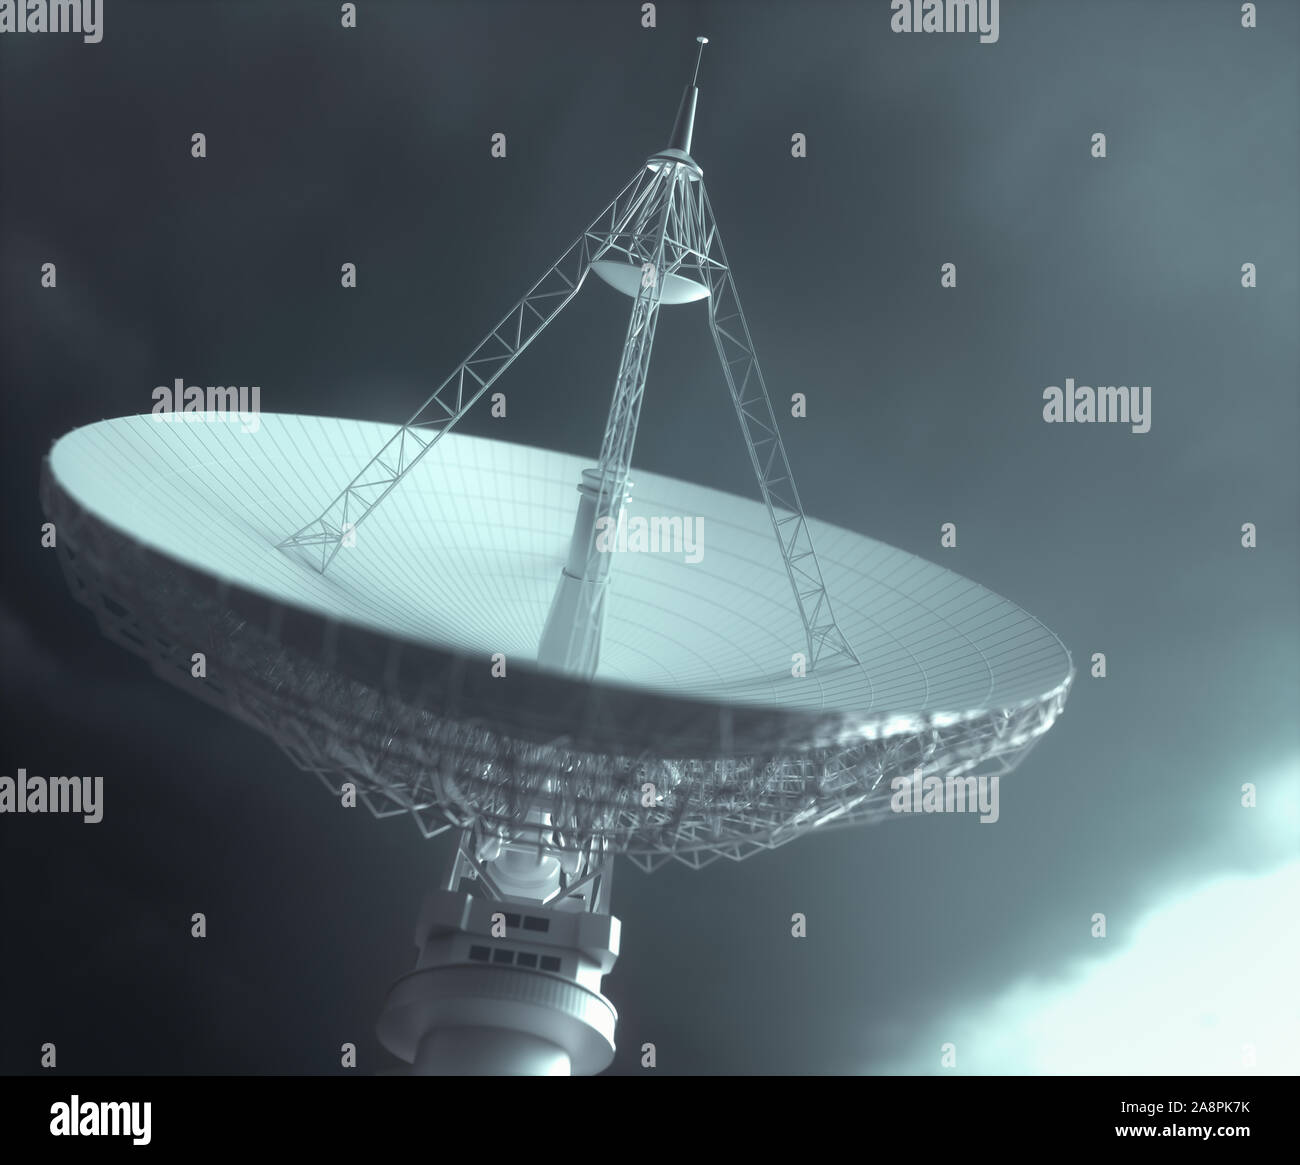 Grand plat antenne satellite pour la communication et la réception du signal hors de la planète Terre. Chemin de détourage inclus. 3D illustration. Banque D'Images